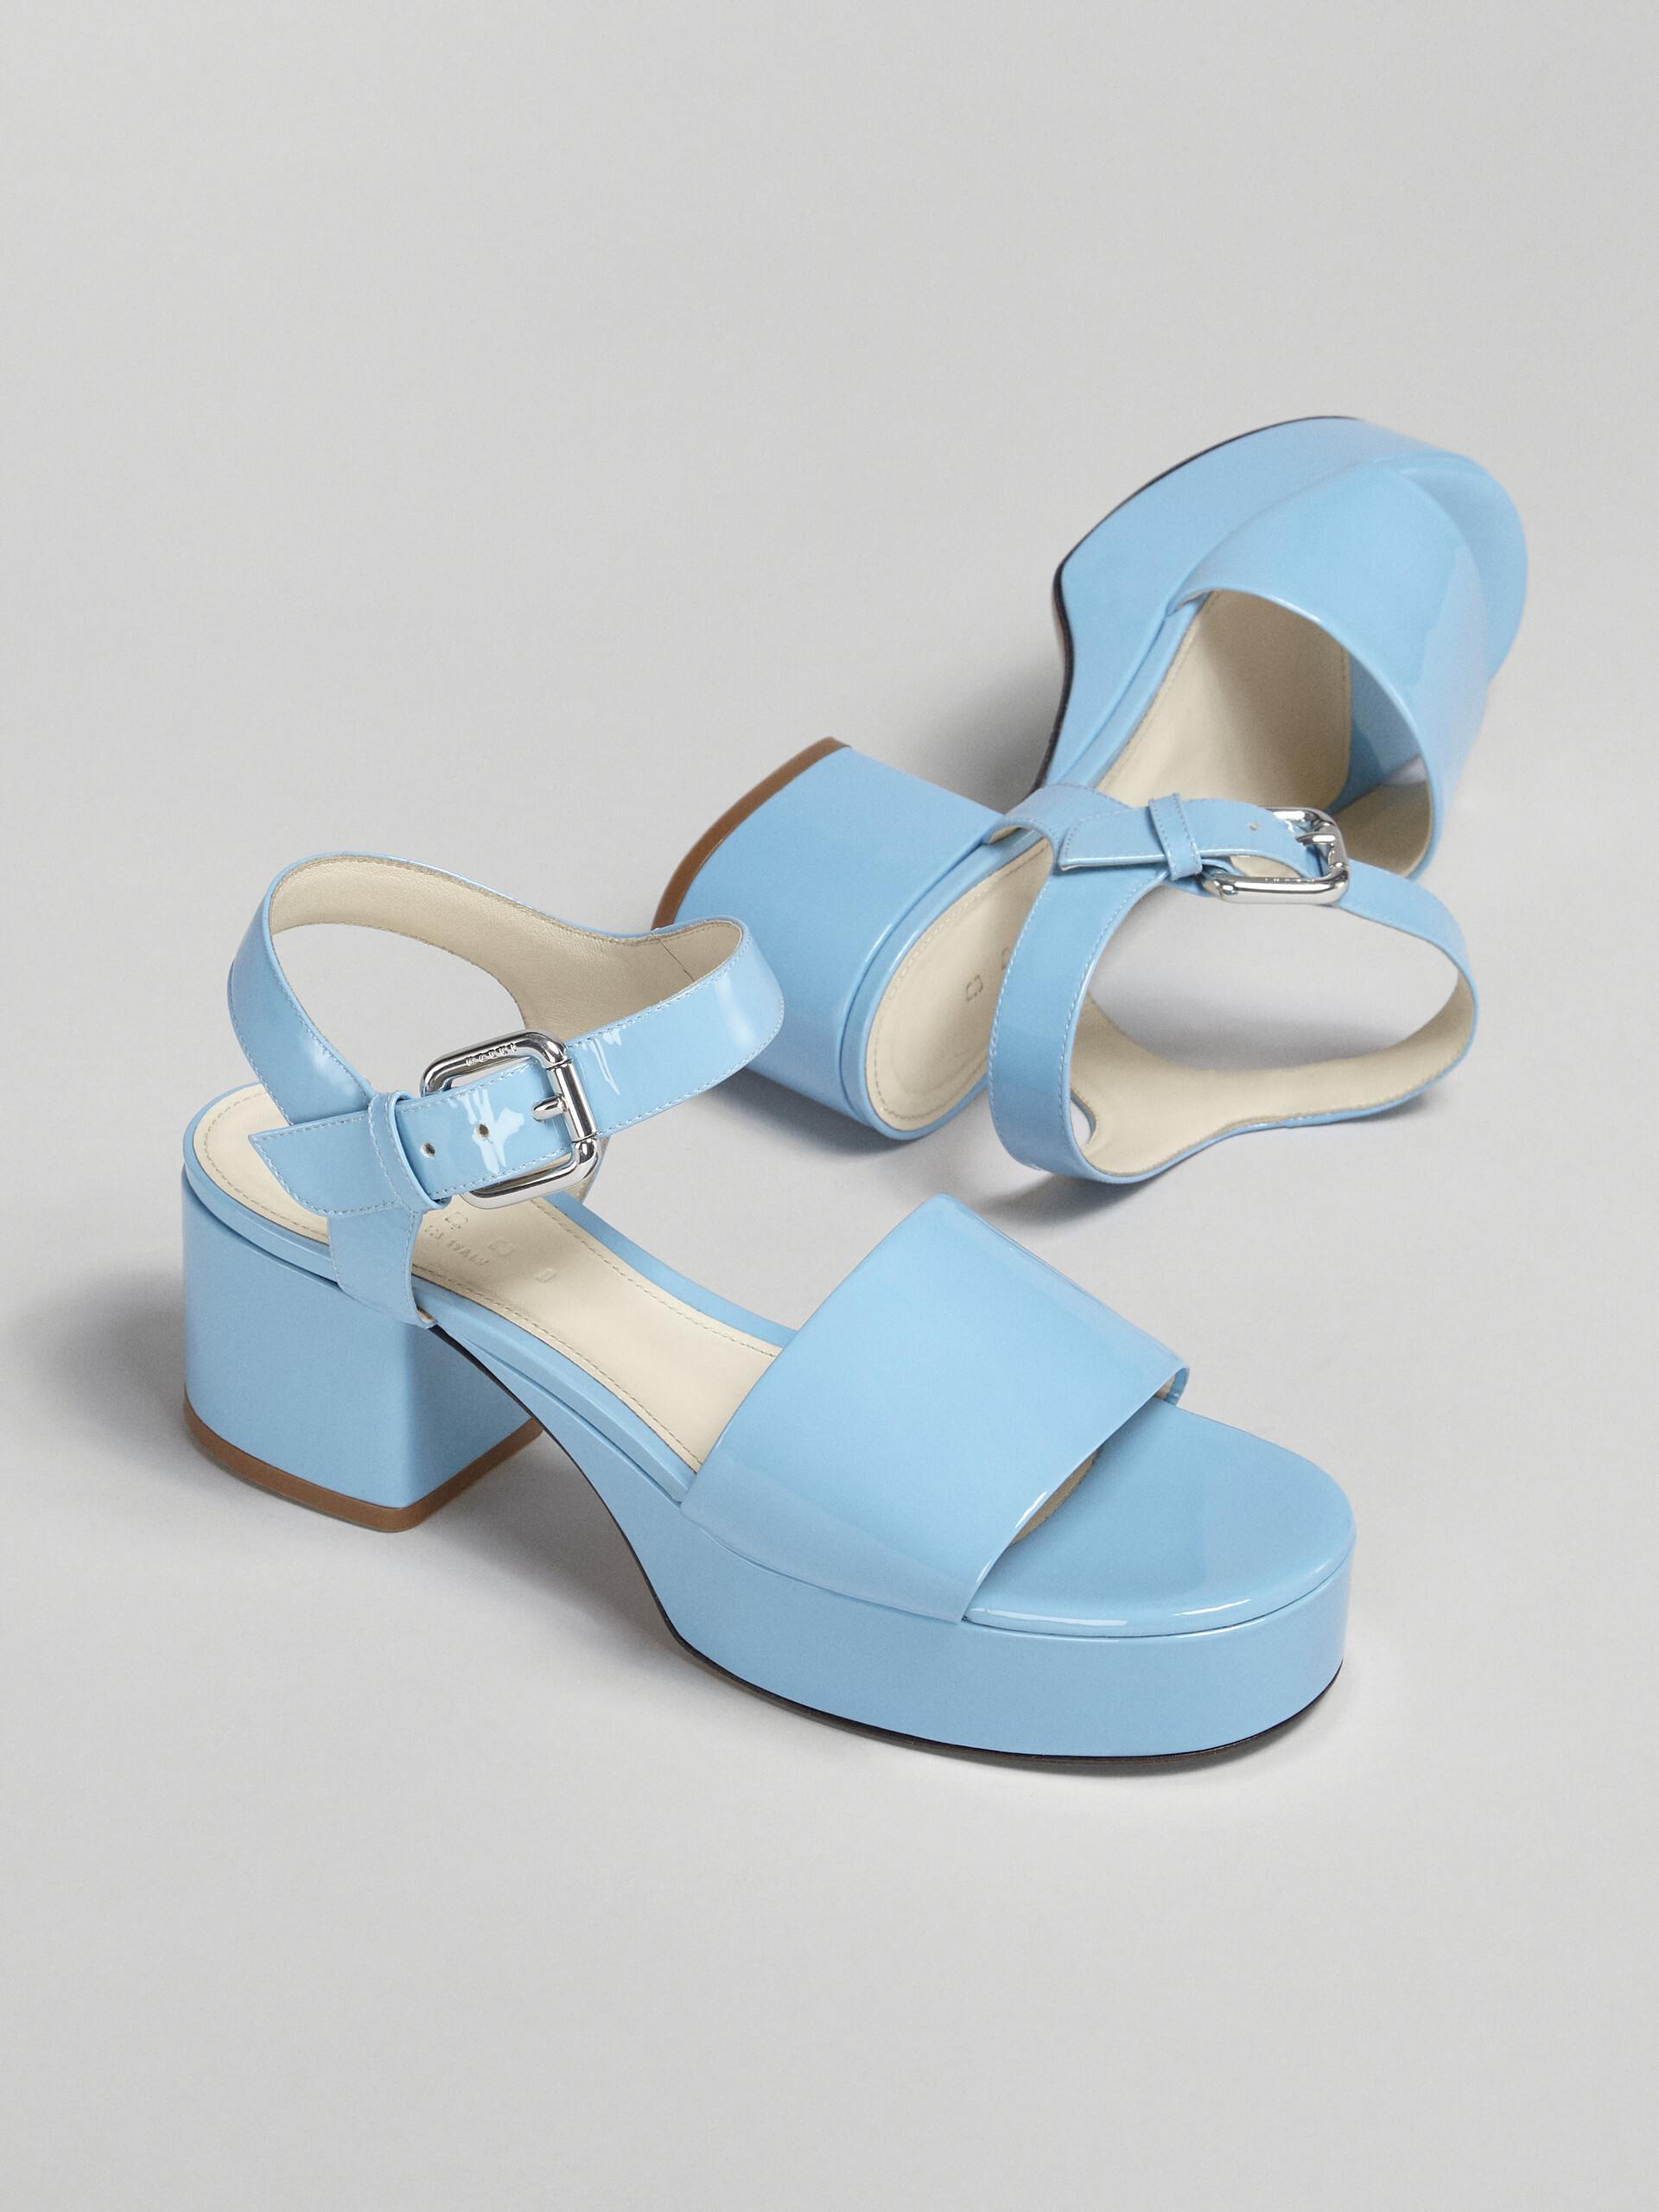 Pale blue patent leather sandal - Sandals - Image 5